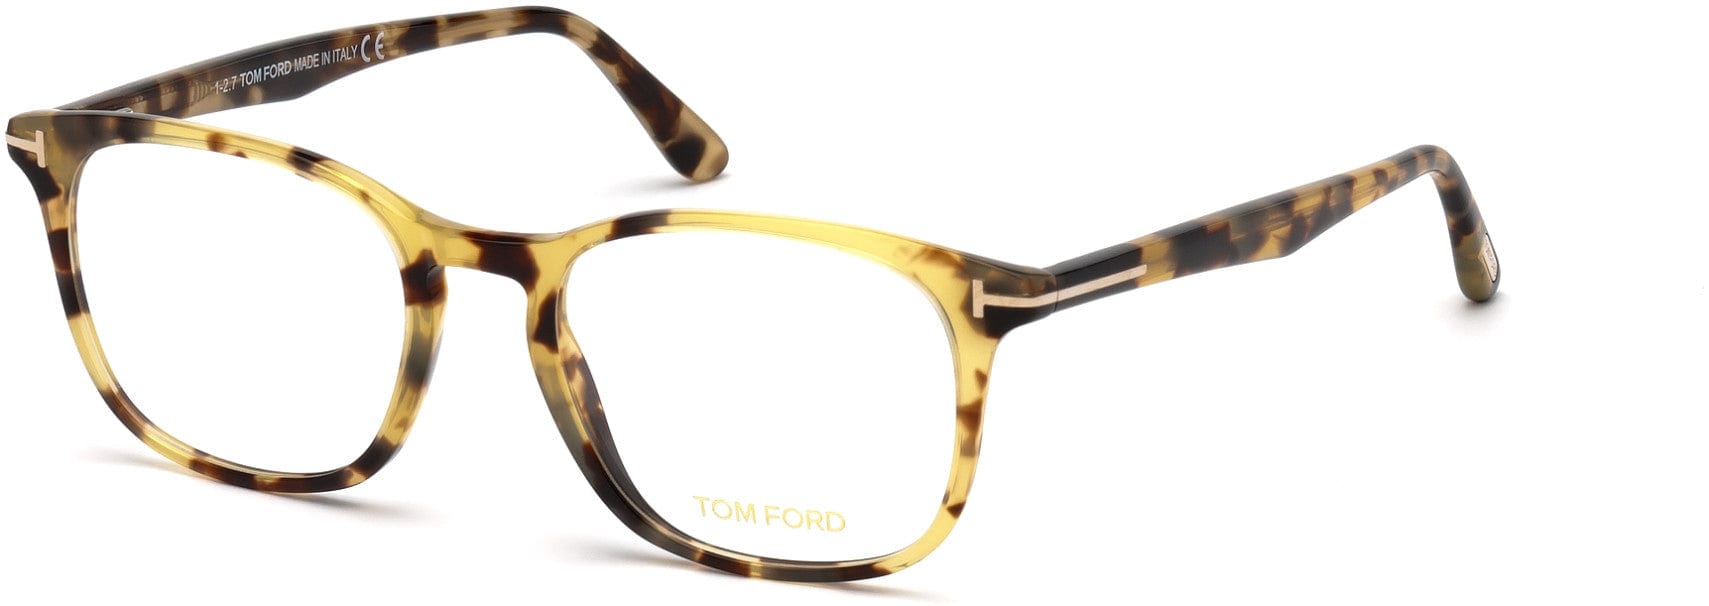 Tom Ford FT5505 Geometric Eyeglasses 053-053 - Shiny Blonde Havana, Rose Gold "t" Logo